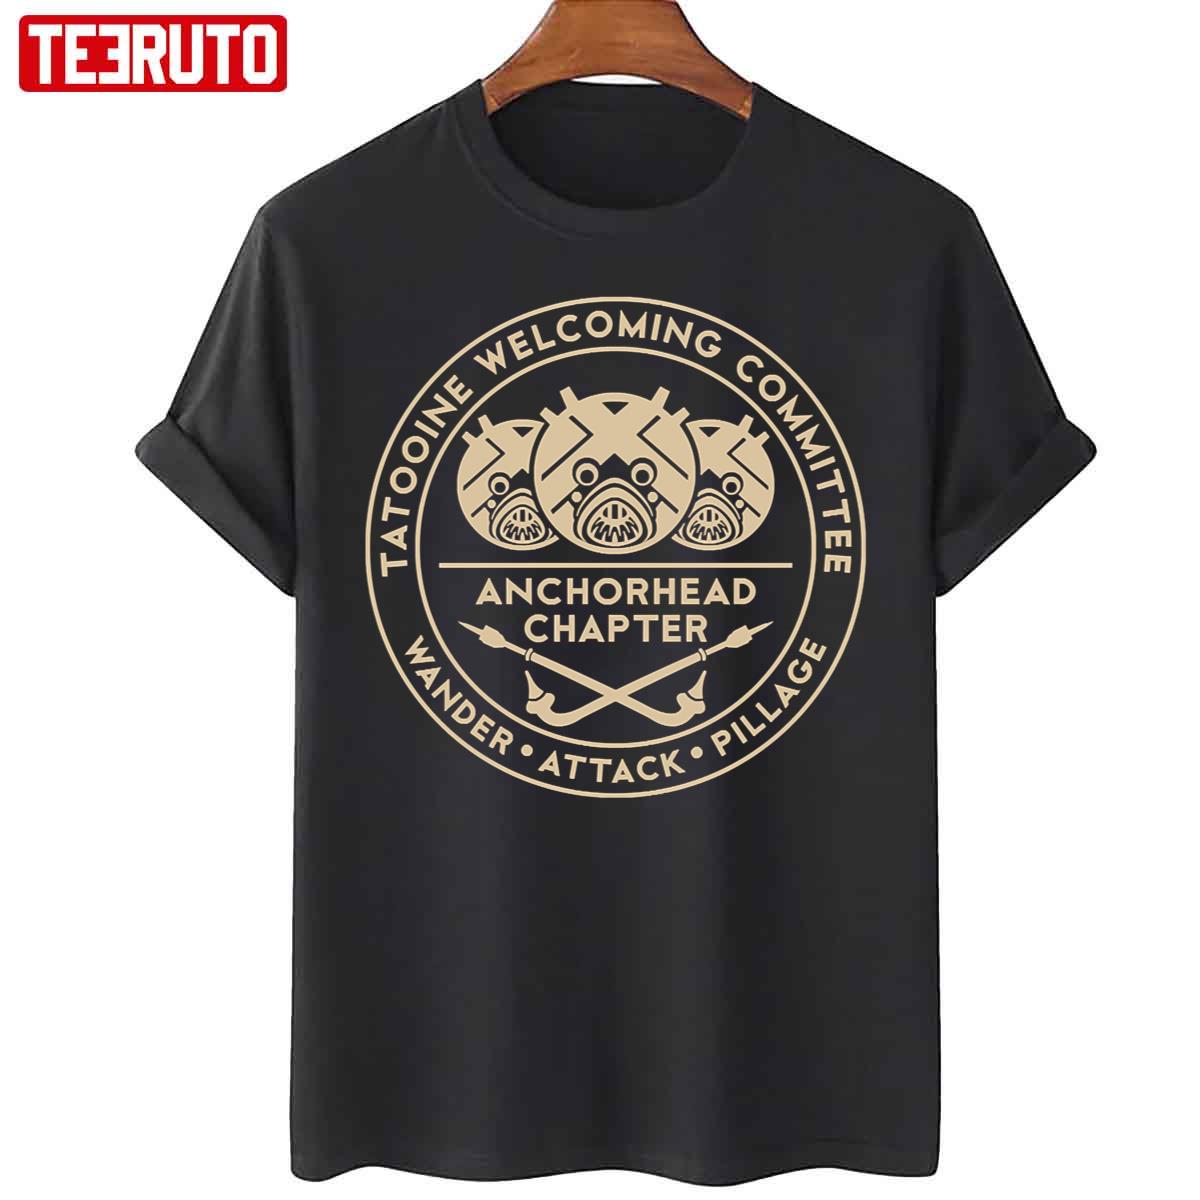 Tatooine Welcoming Committee Unisex T-Shirt